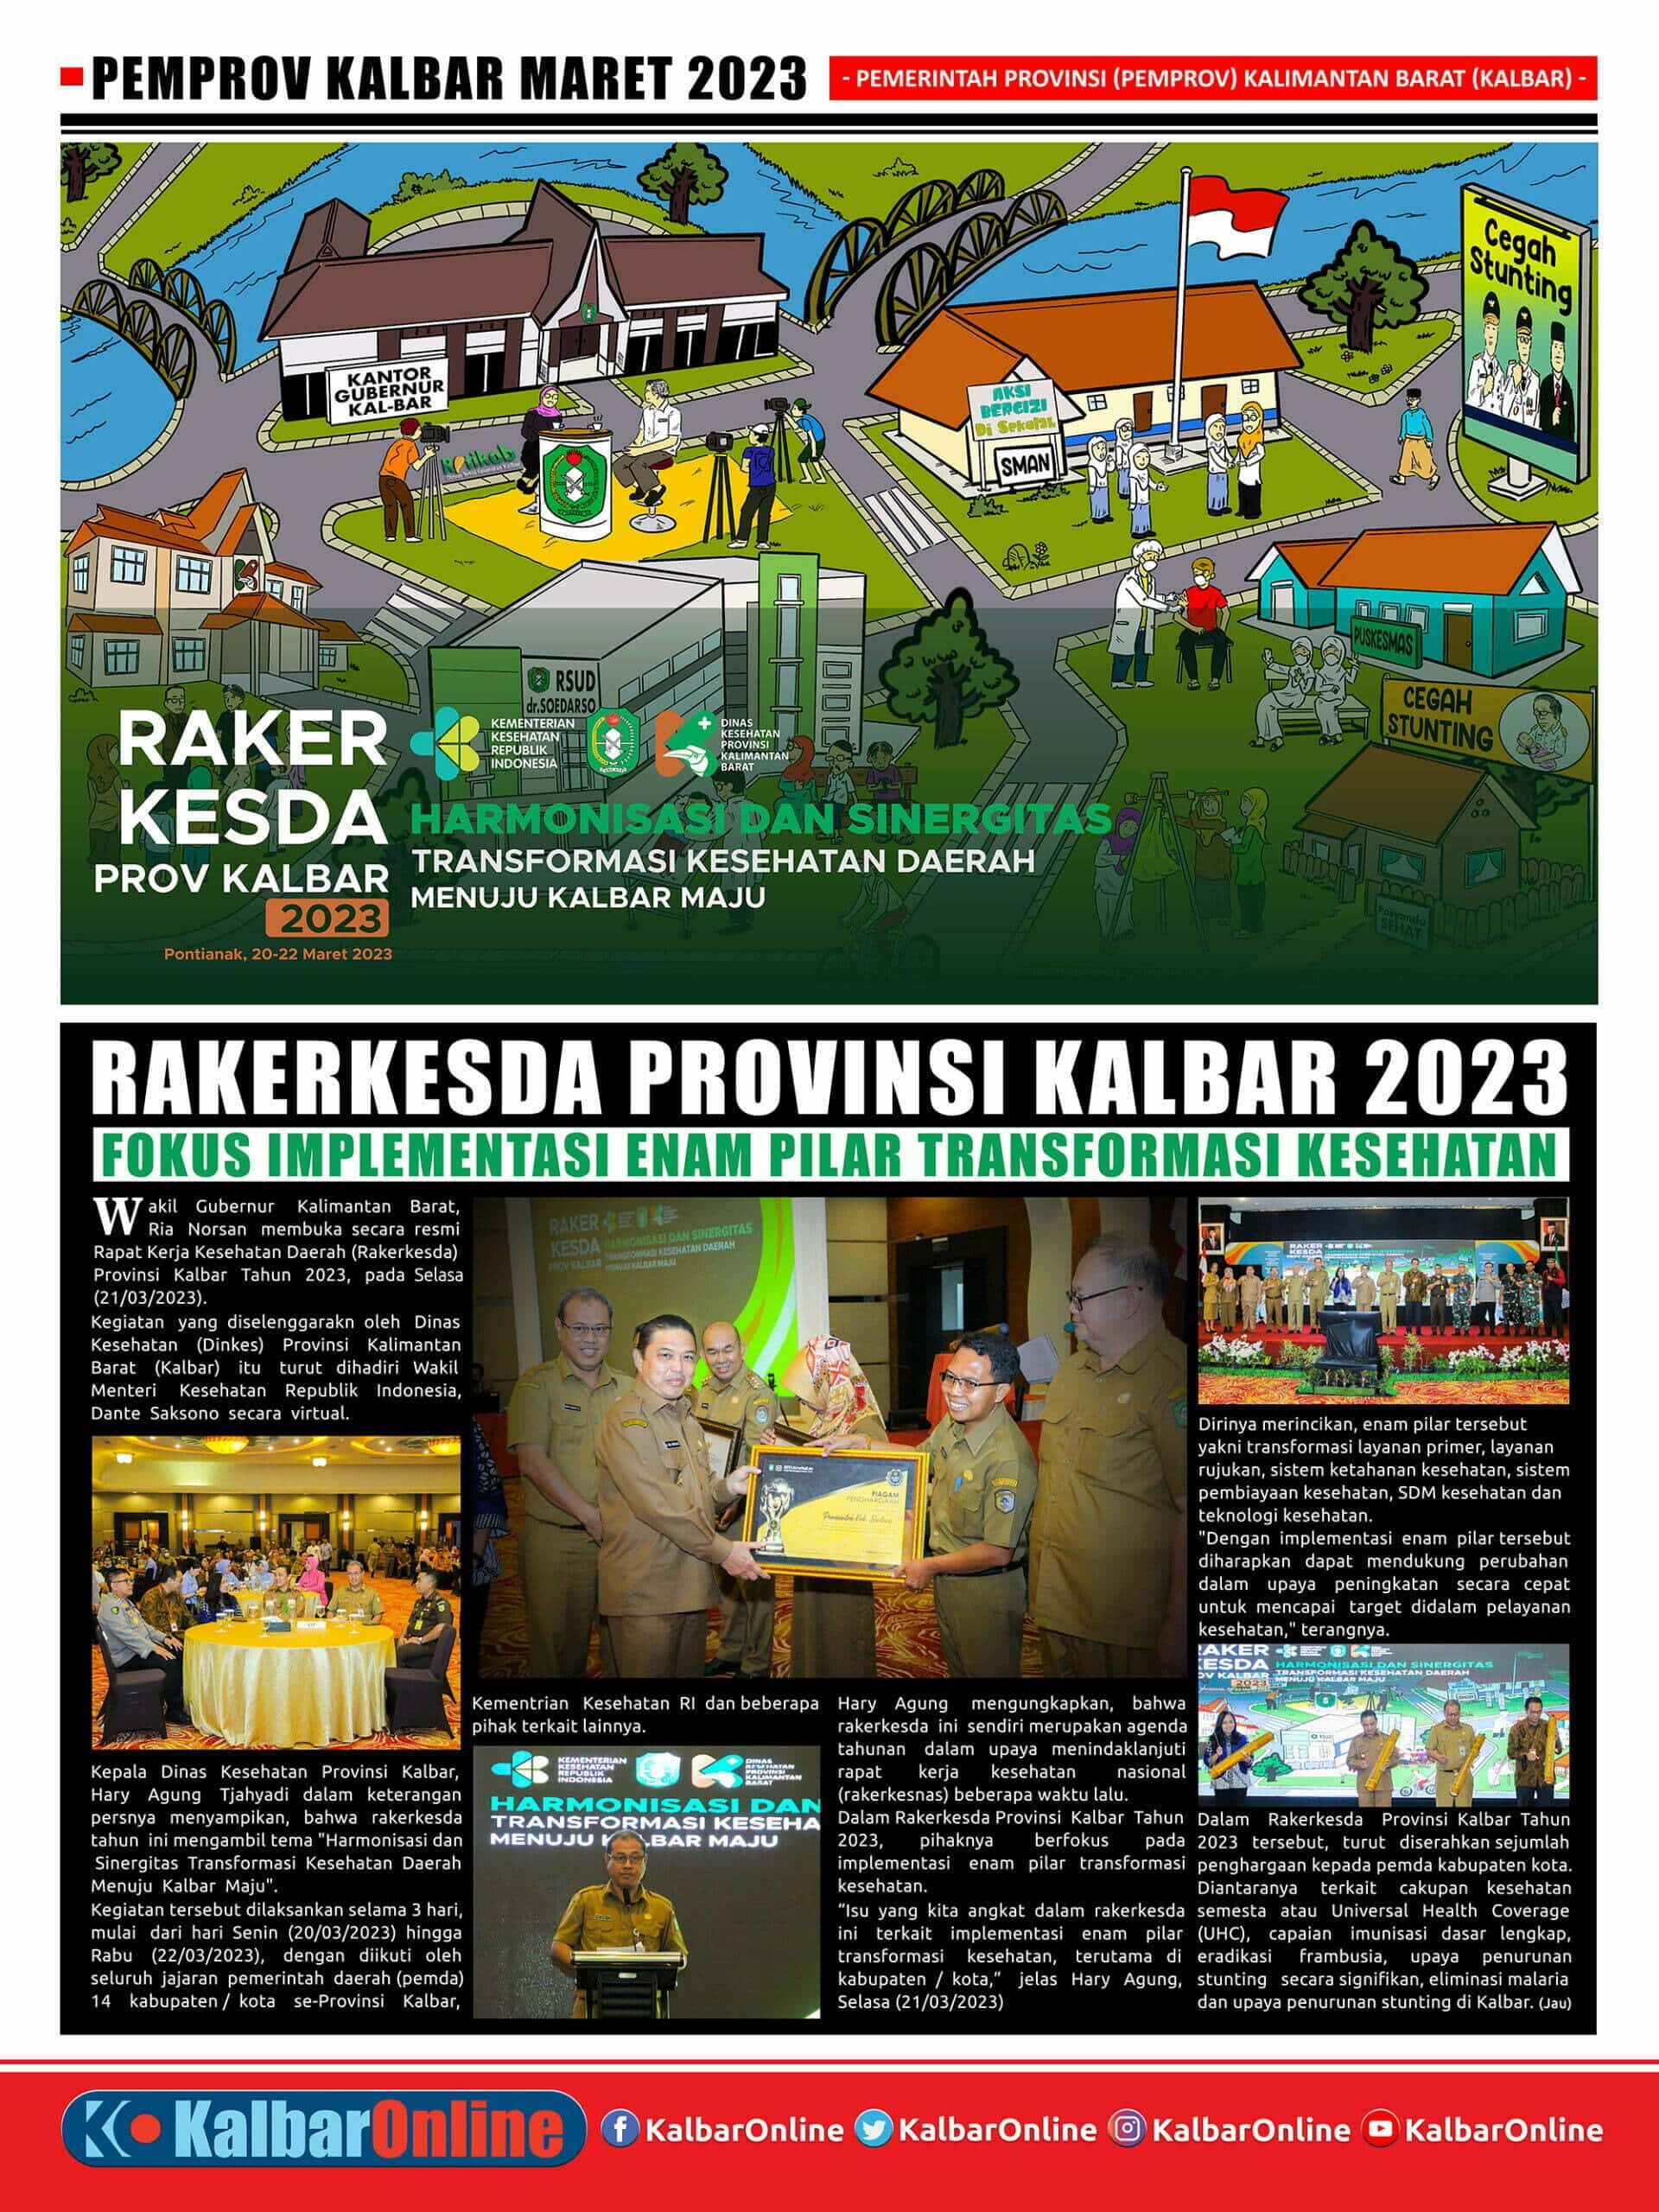 Rakerkesda Provinsi Kalbar 2023, Fokus Implementasi Enam Pilar Transformasi Kesehatan